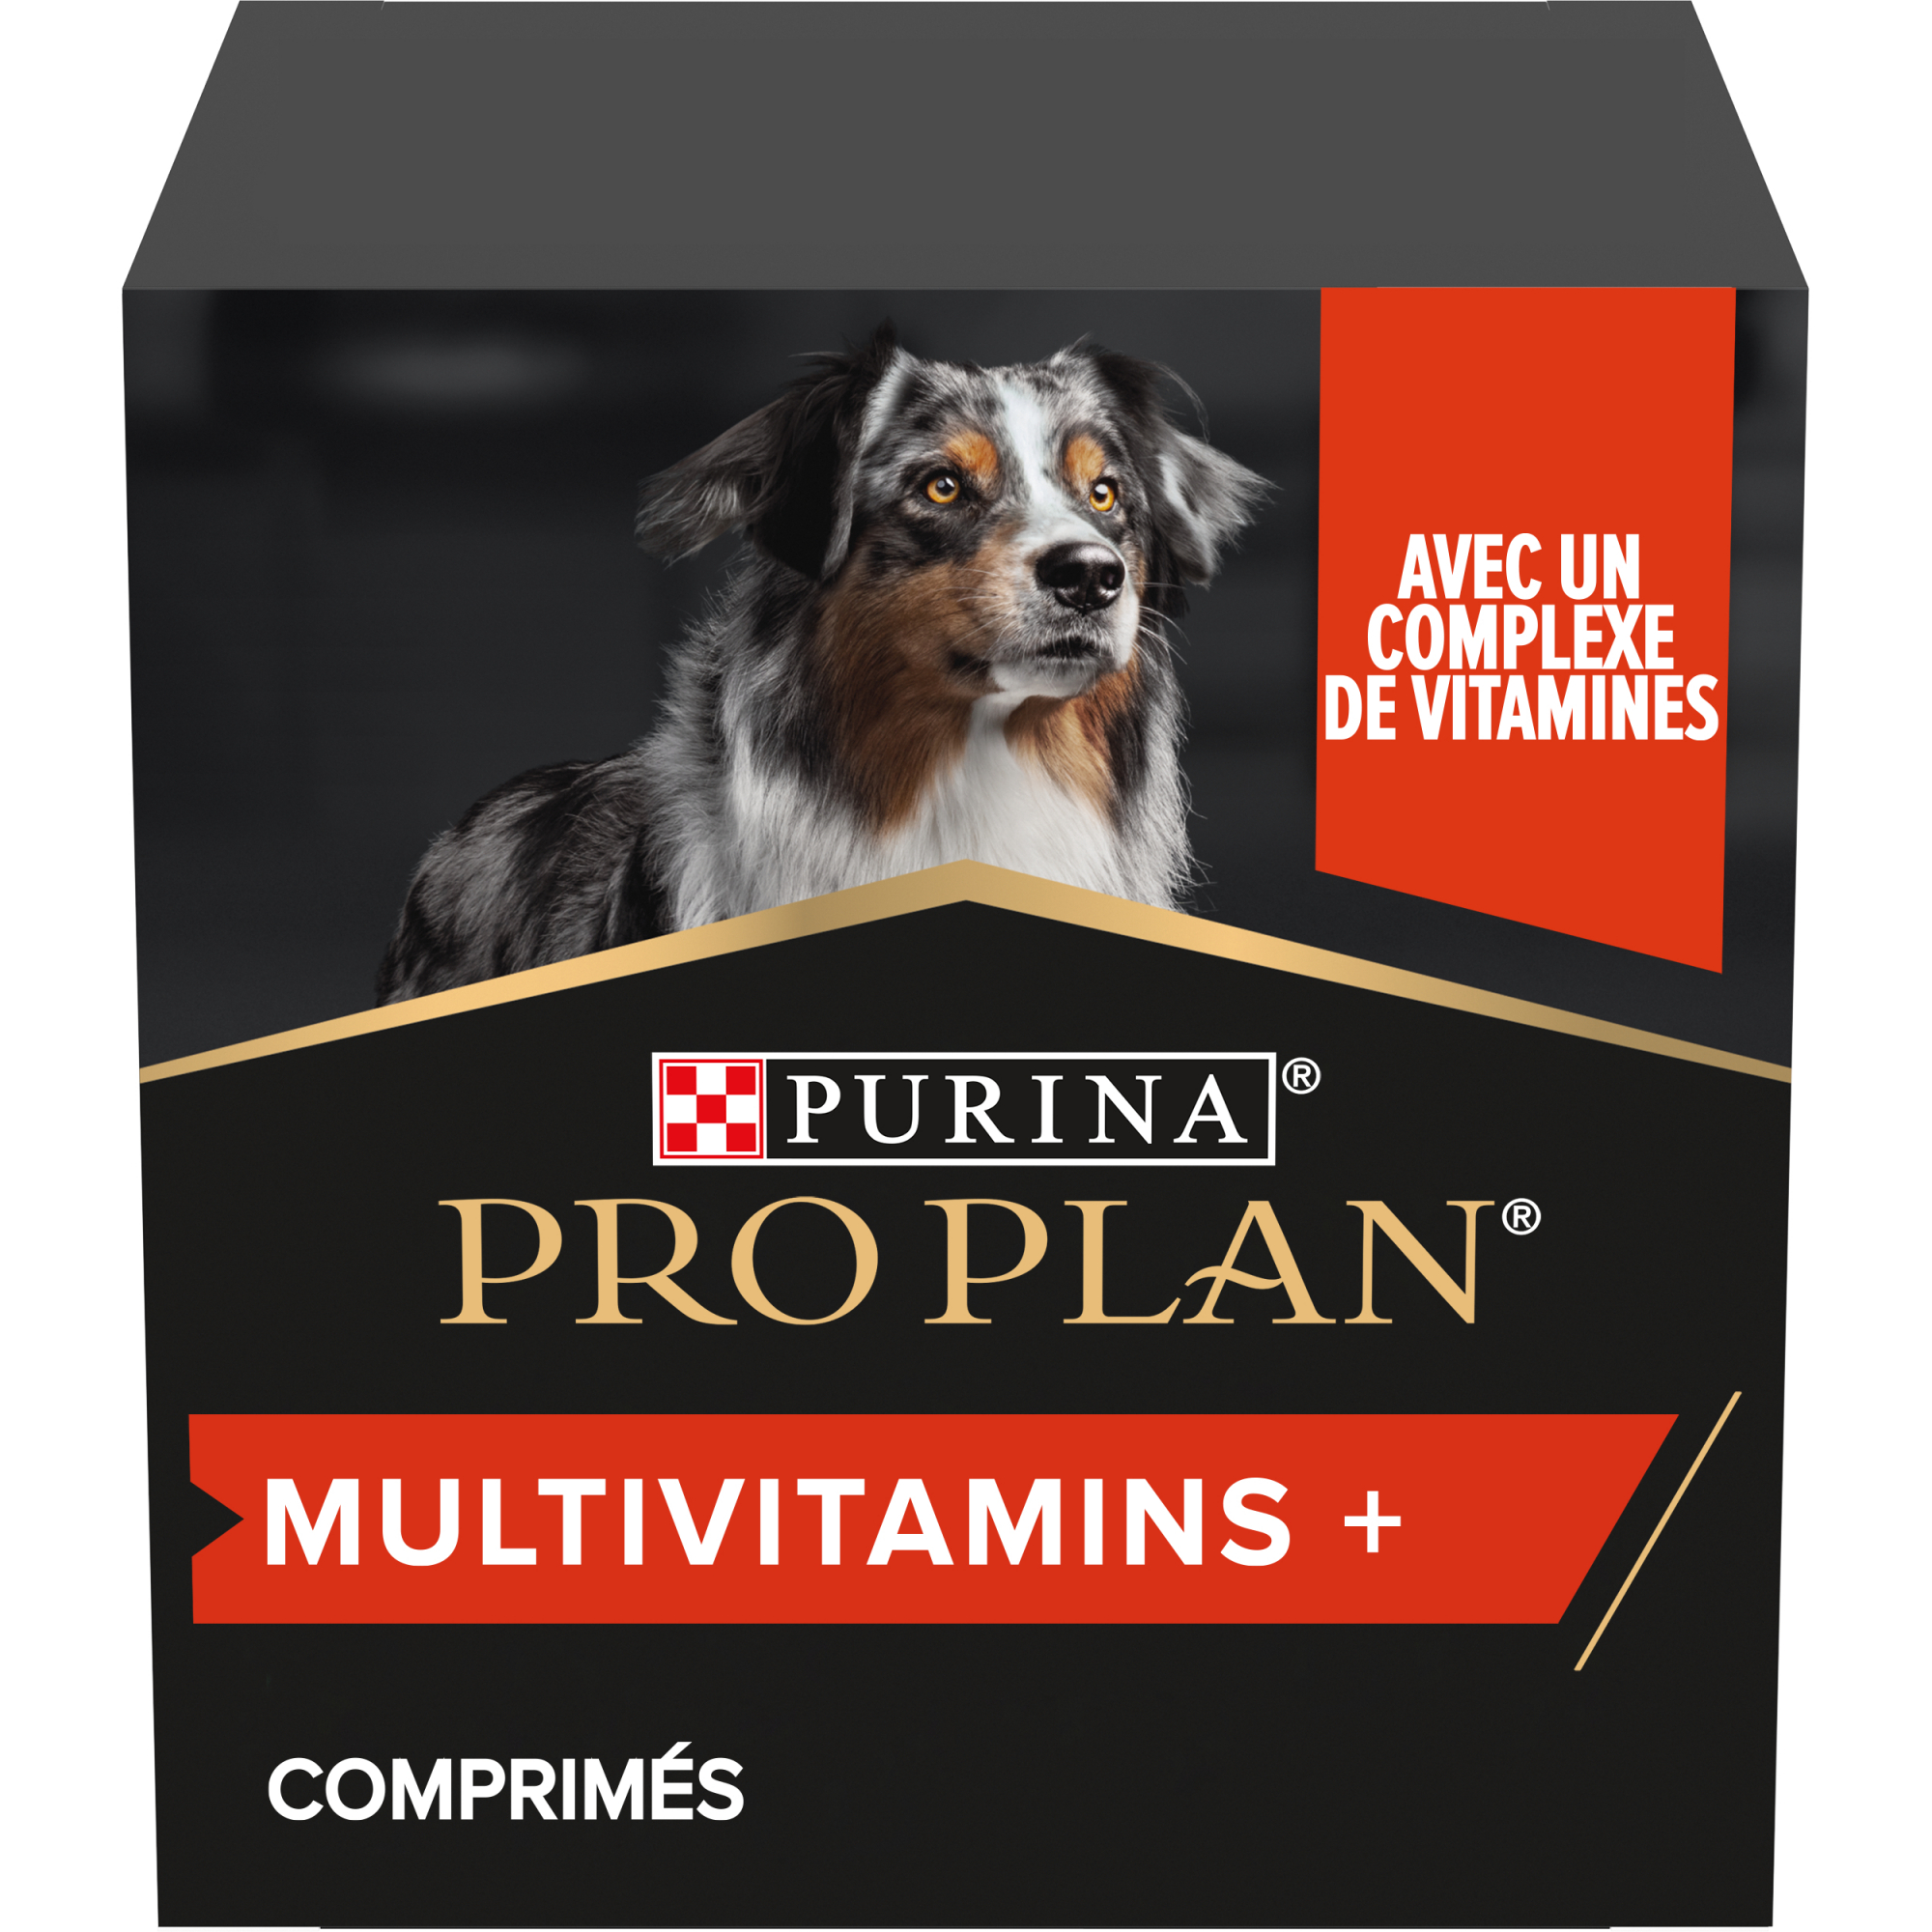 Purina Pro Plan Multivitamins+ suplemento para perros en comprimidos